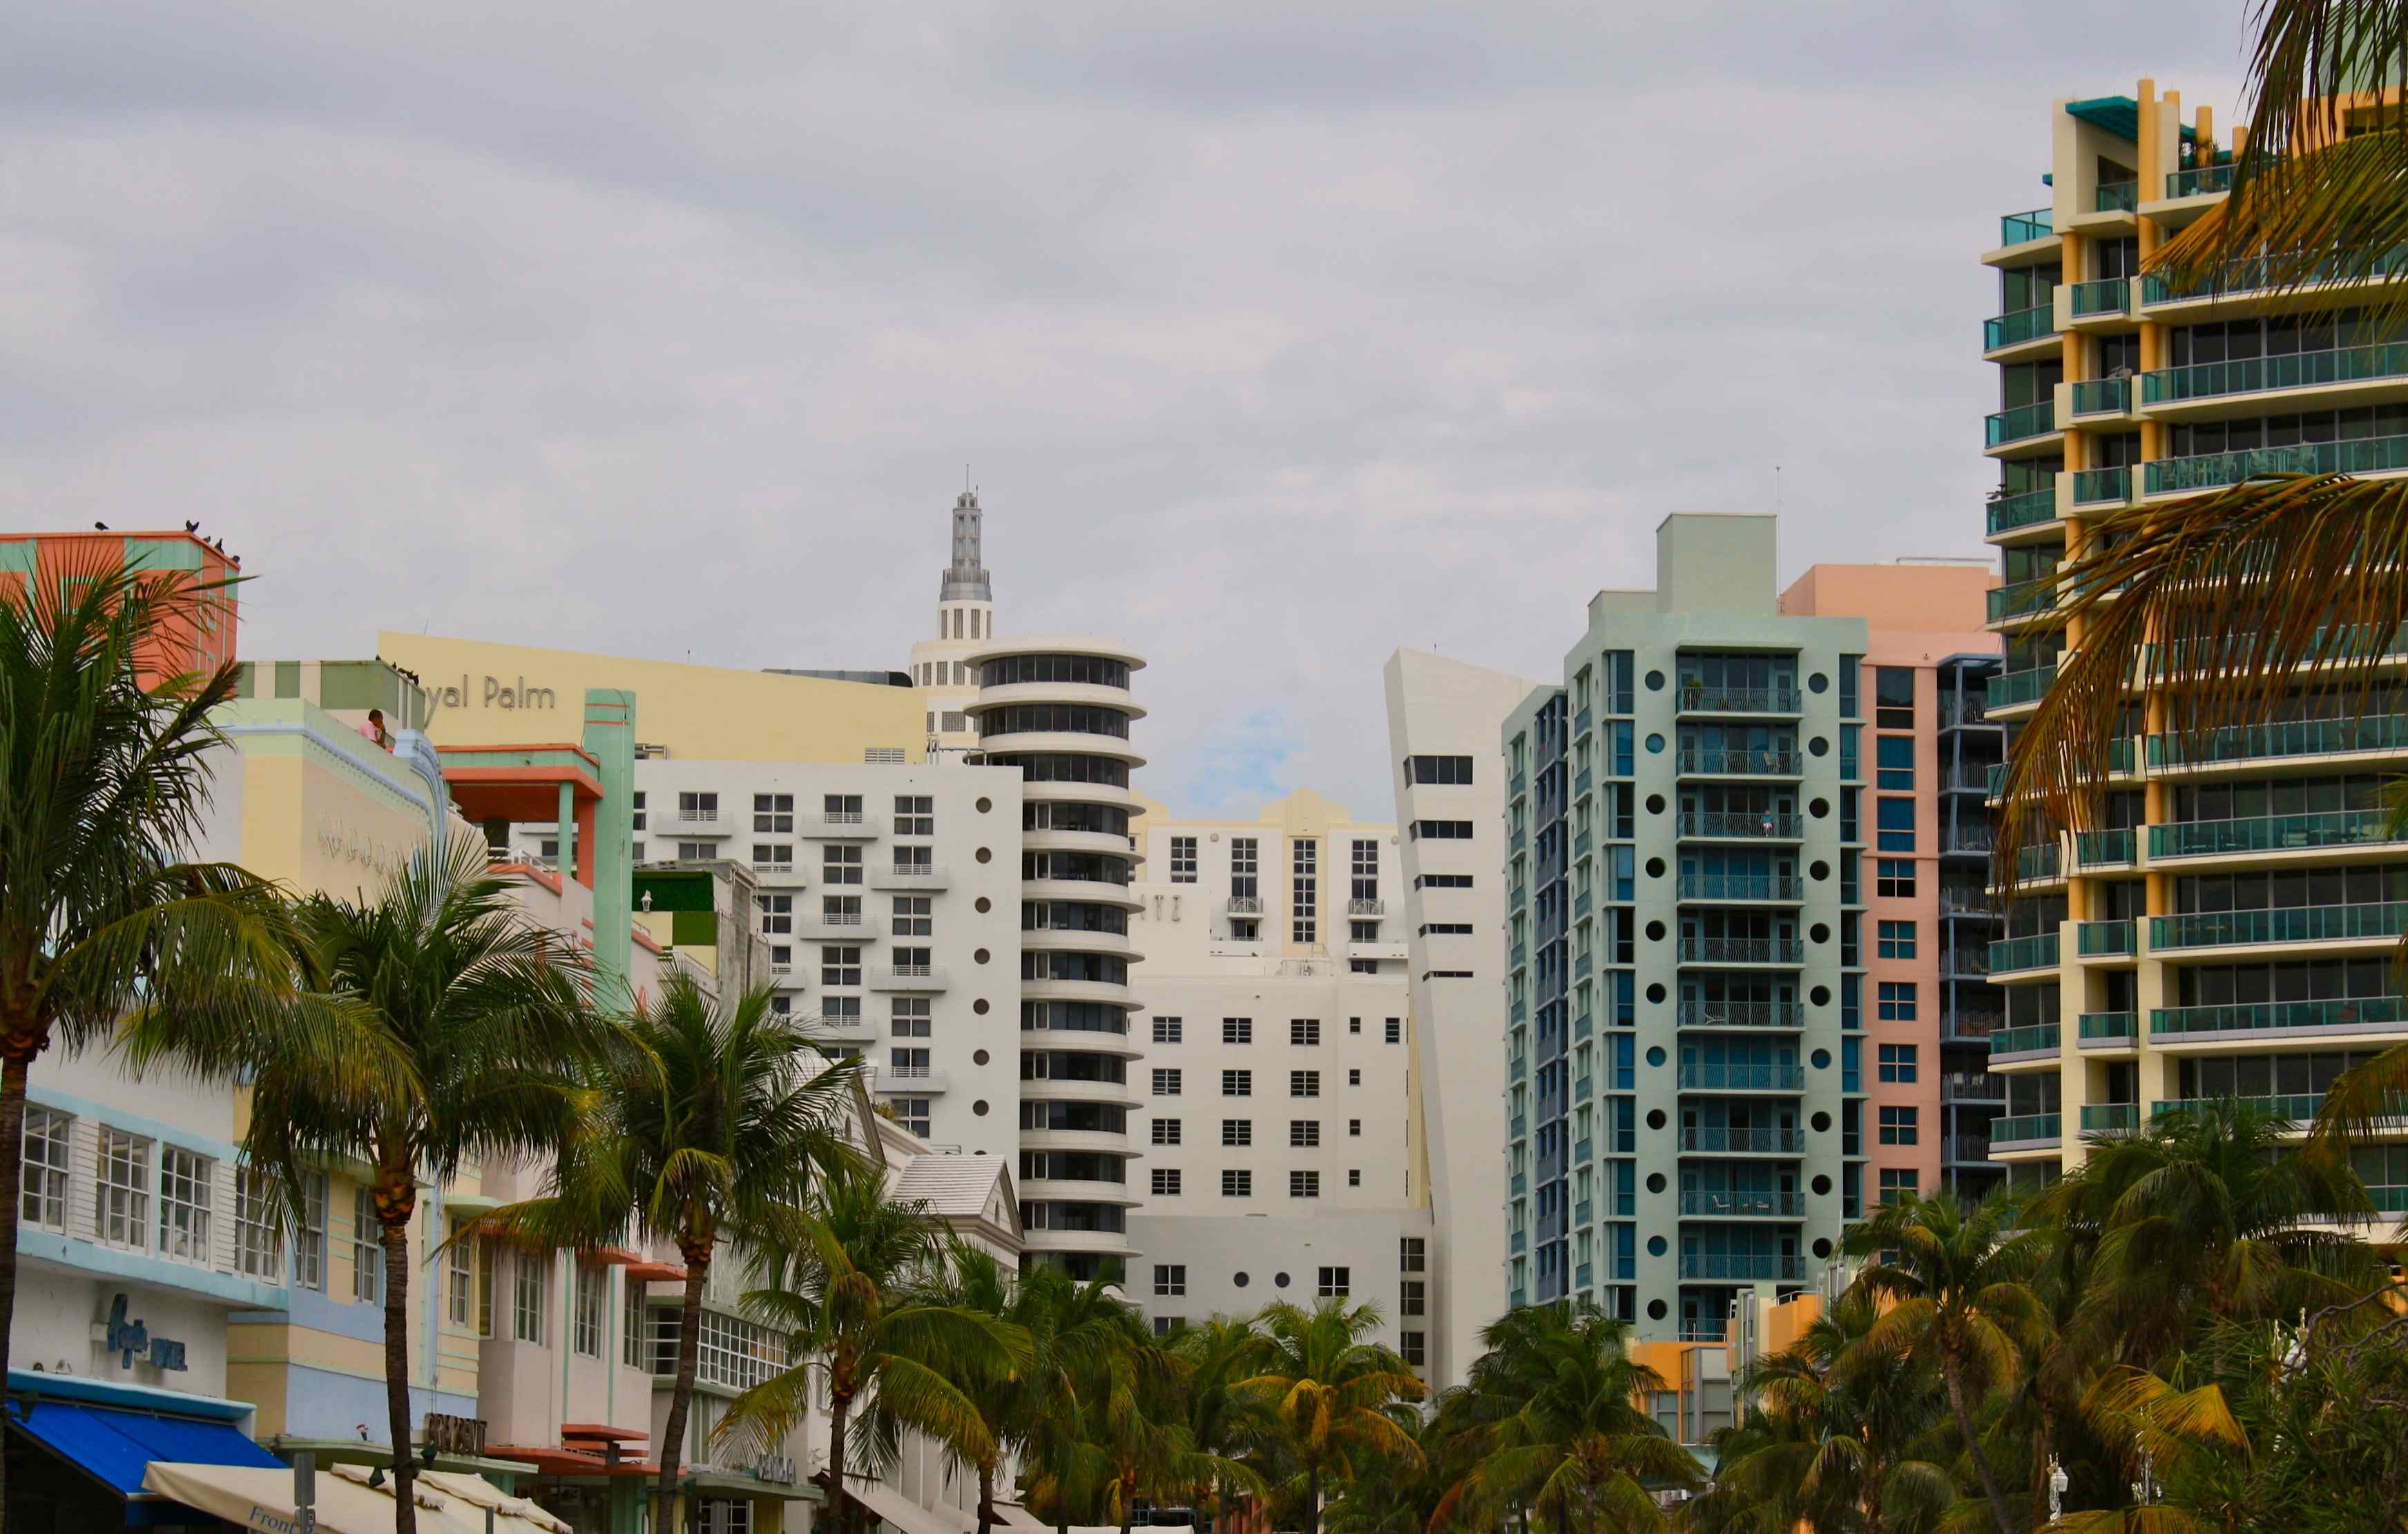 Ocean Drive, Miami Beach, SoBe, South Beach, Art Deco